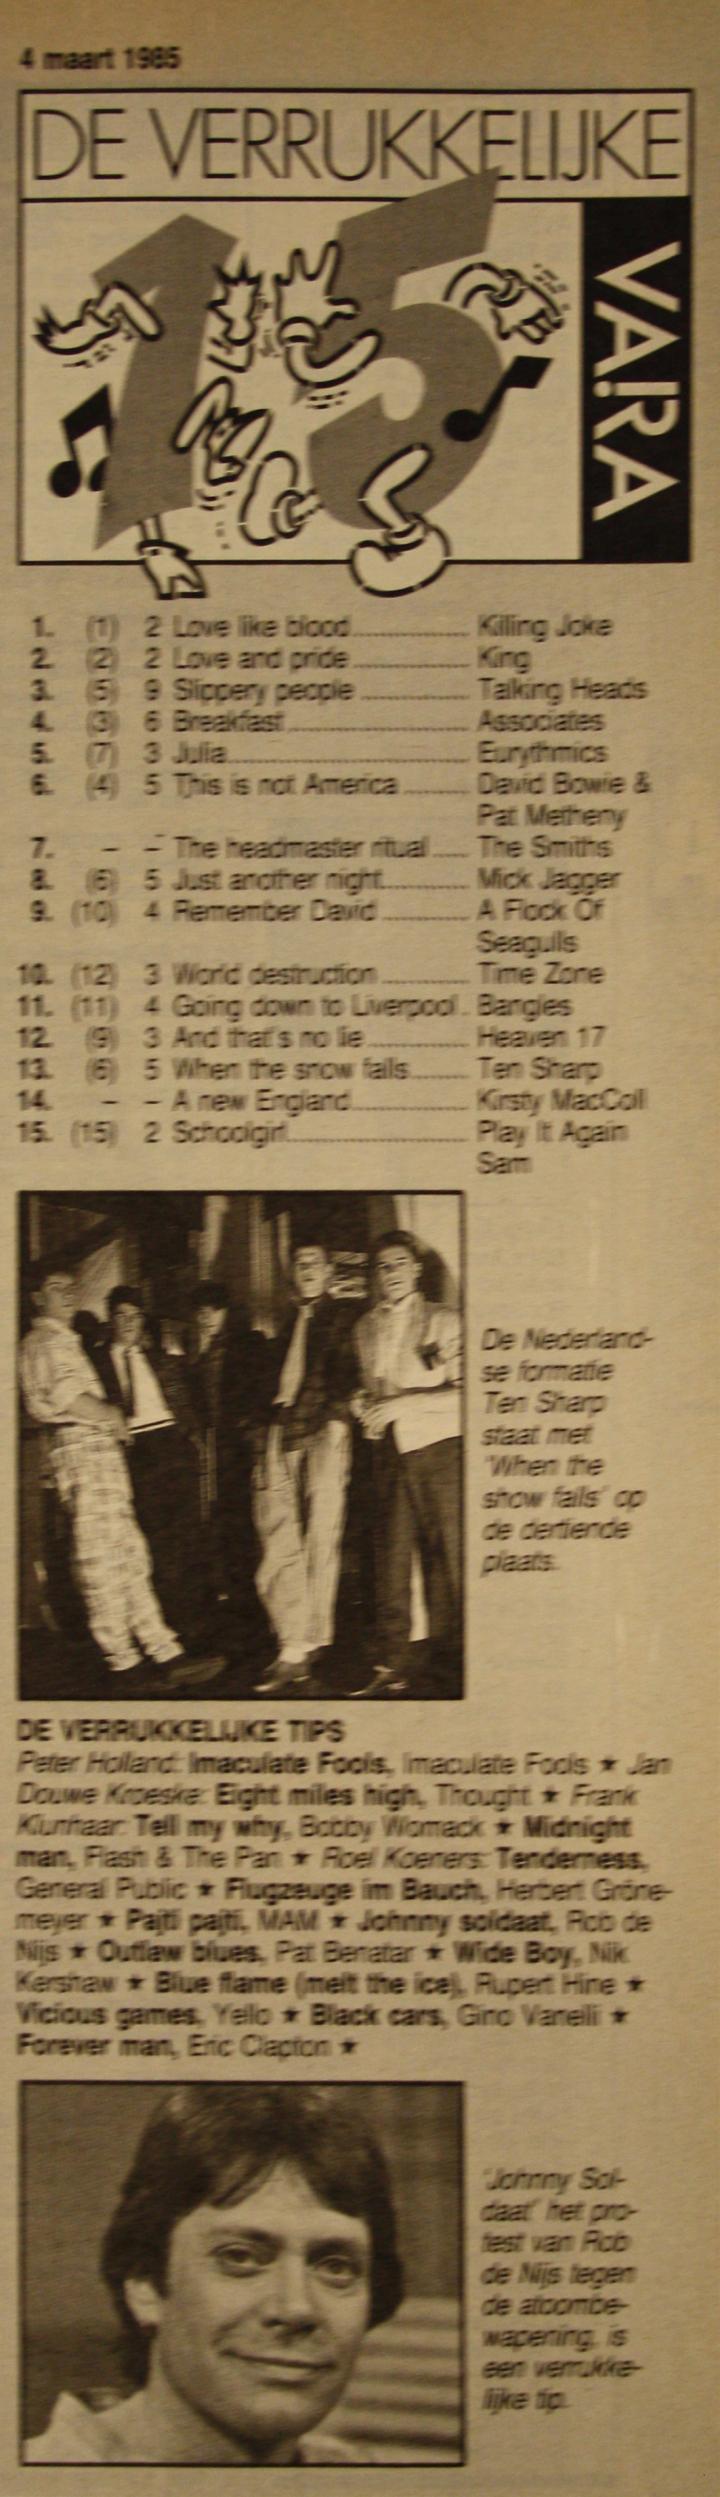 De Verrukkelijke 15 van 5 maart 1985, afgedrukt in de VARA-gids